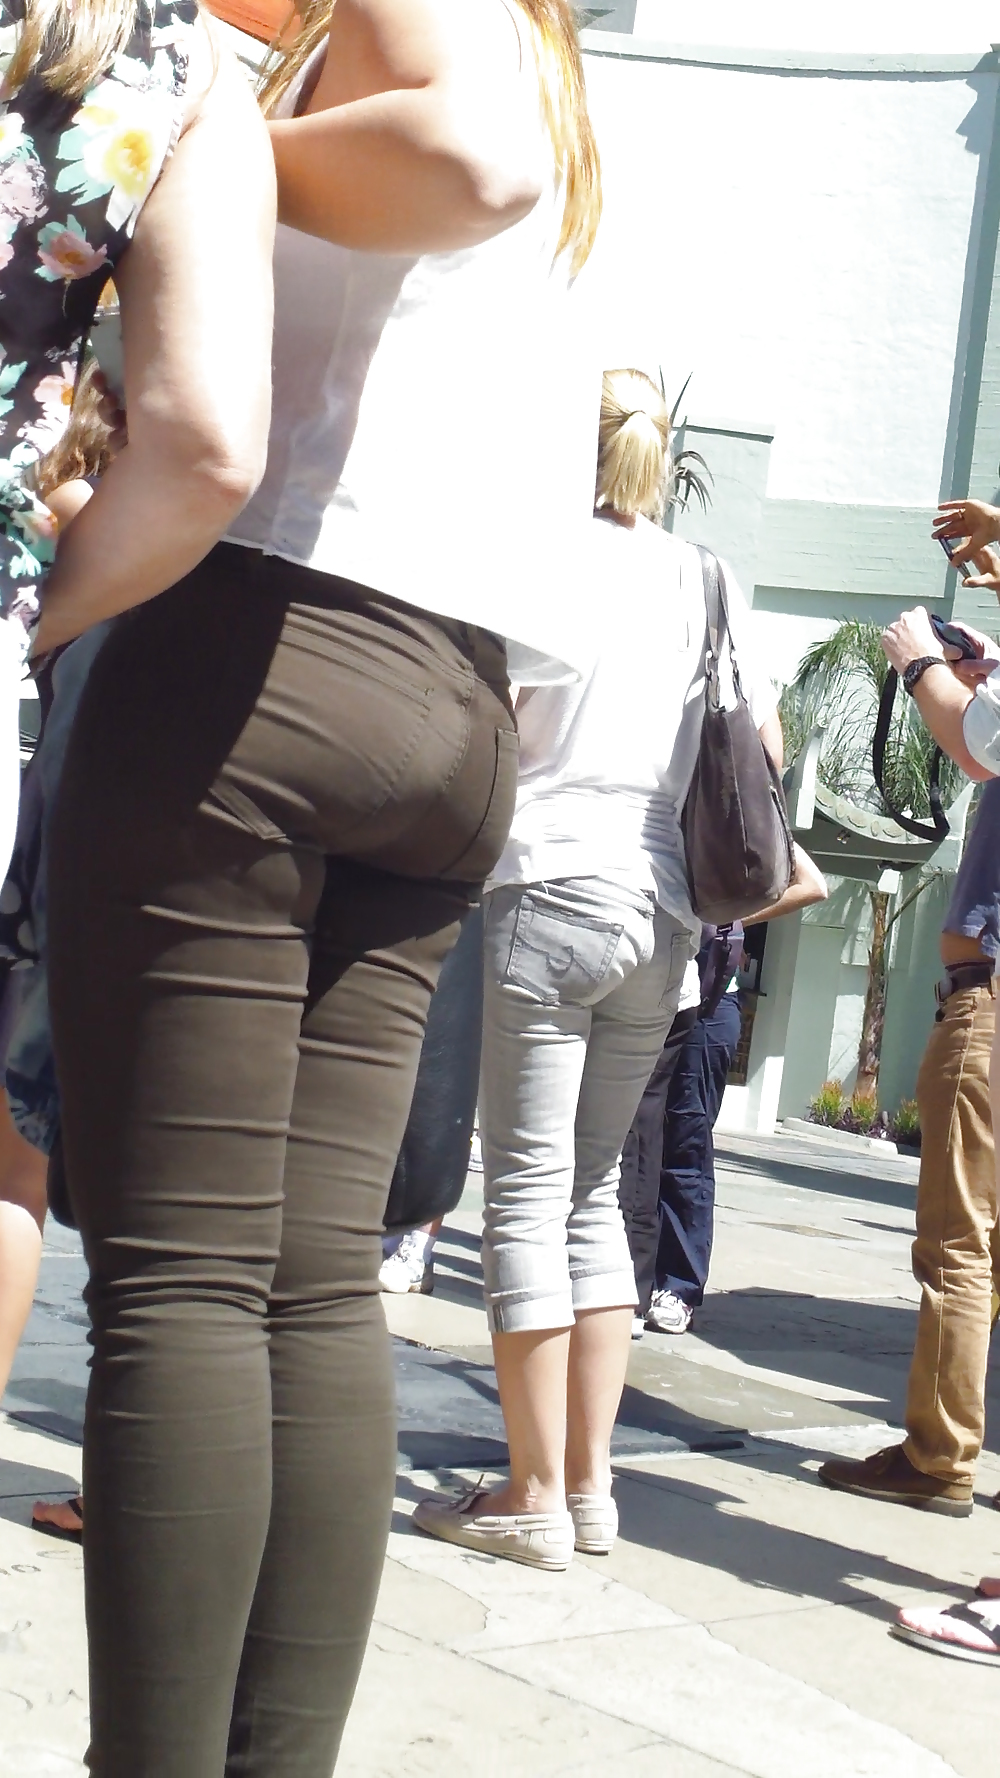 Spanish teen bubble butt & ass in pants #21202591